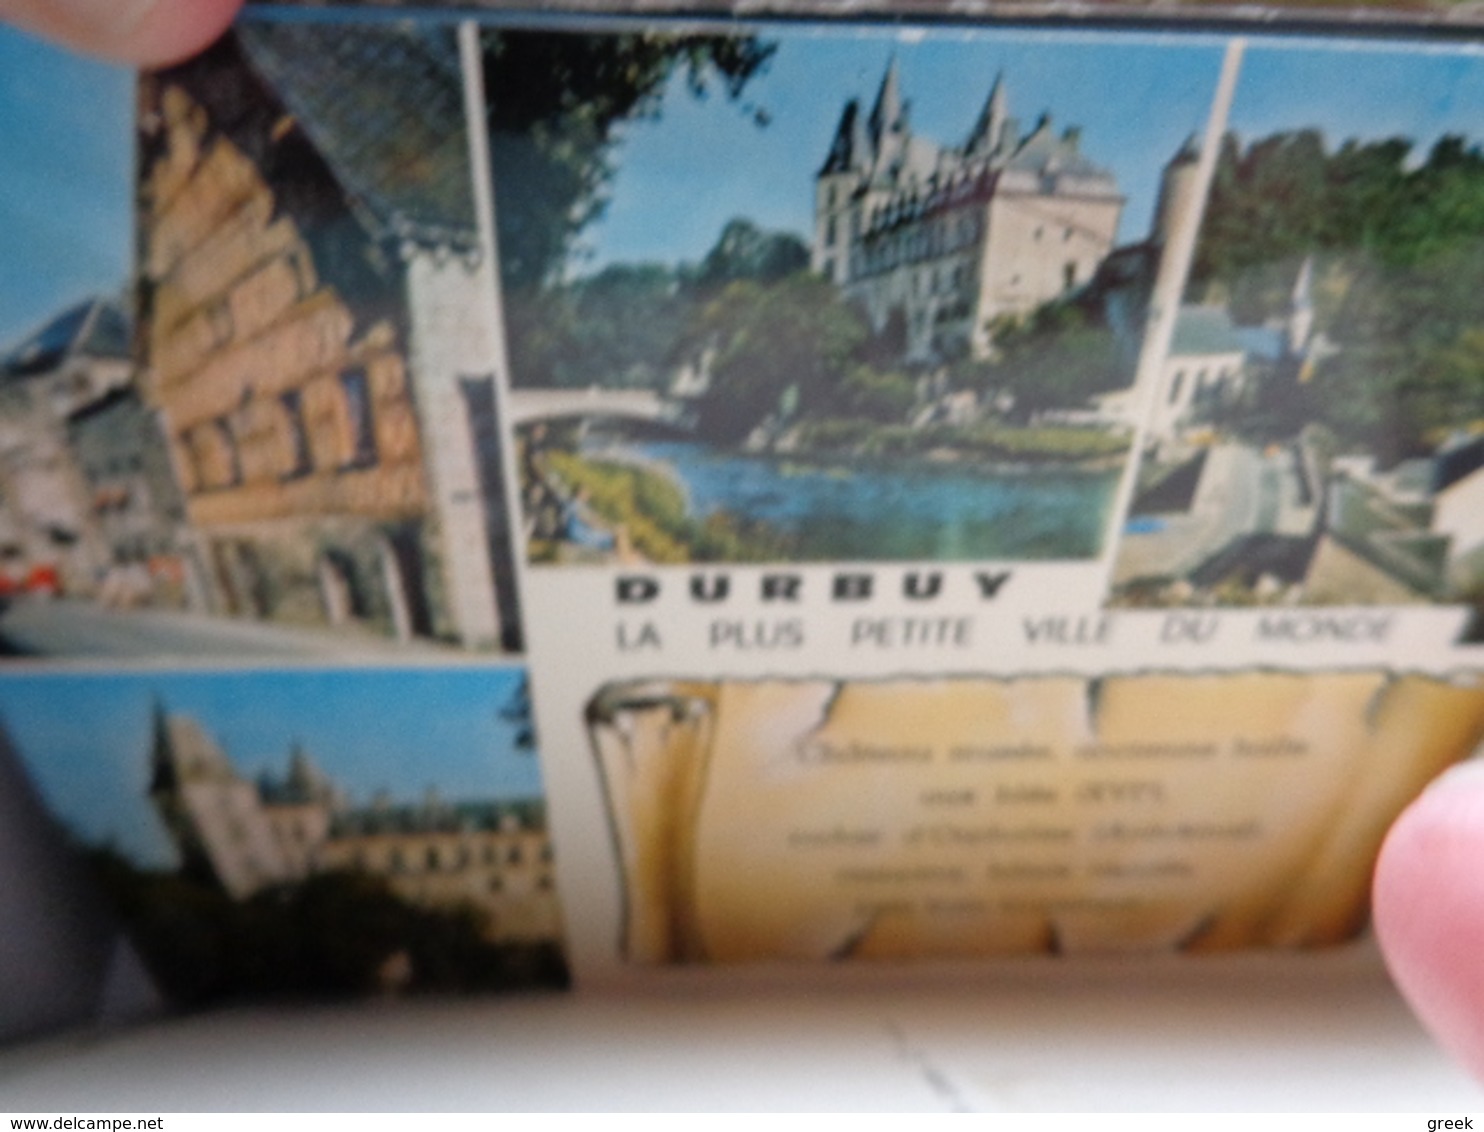 Doos postkaarten (3kg710) - Veel gekleurde Belgische kaarten, beroepen, ... zie enkele foto's